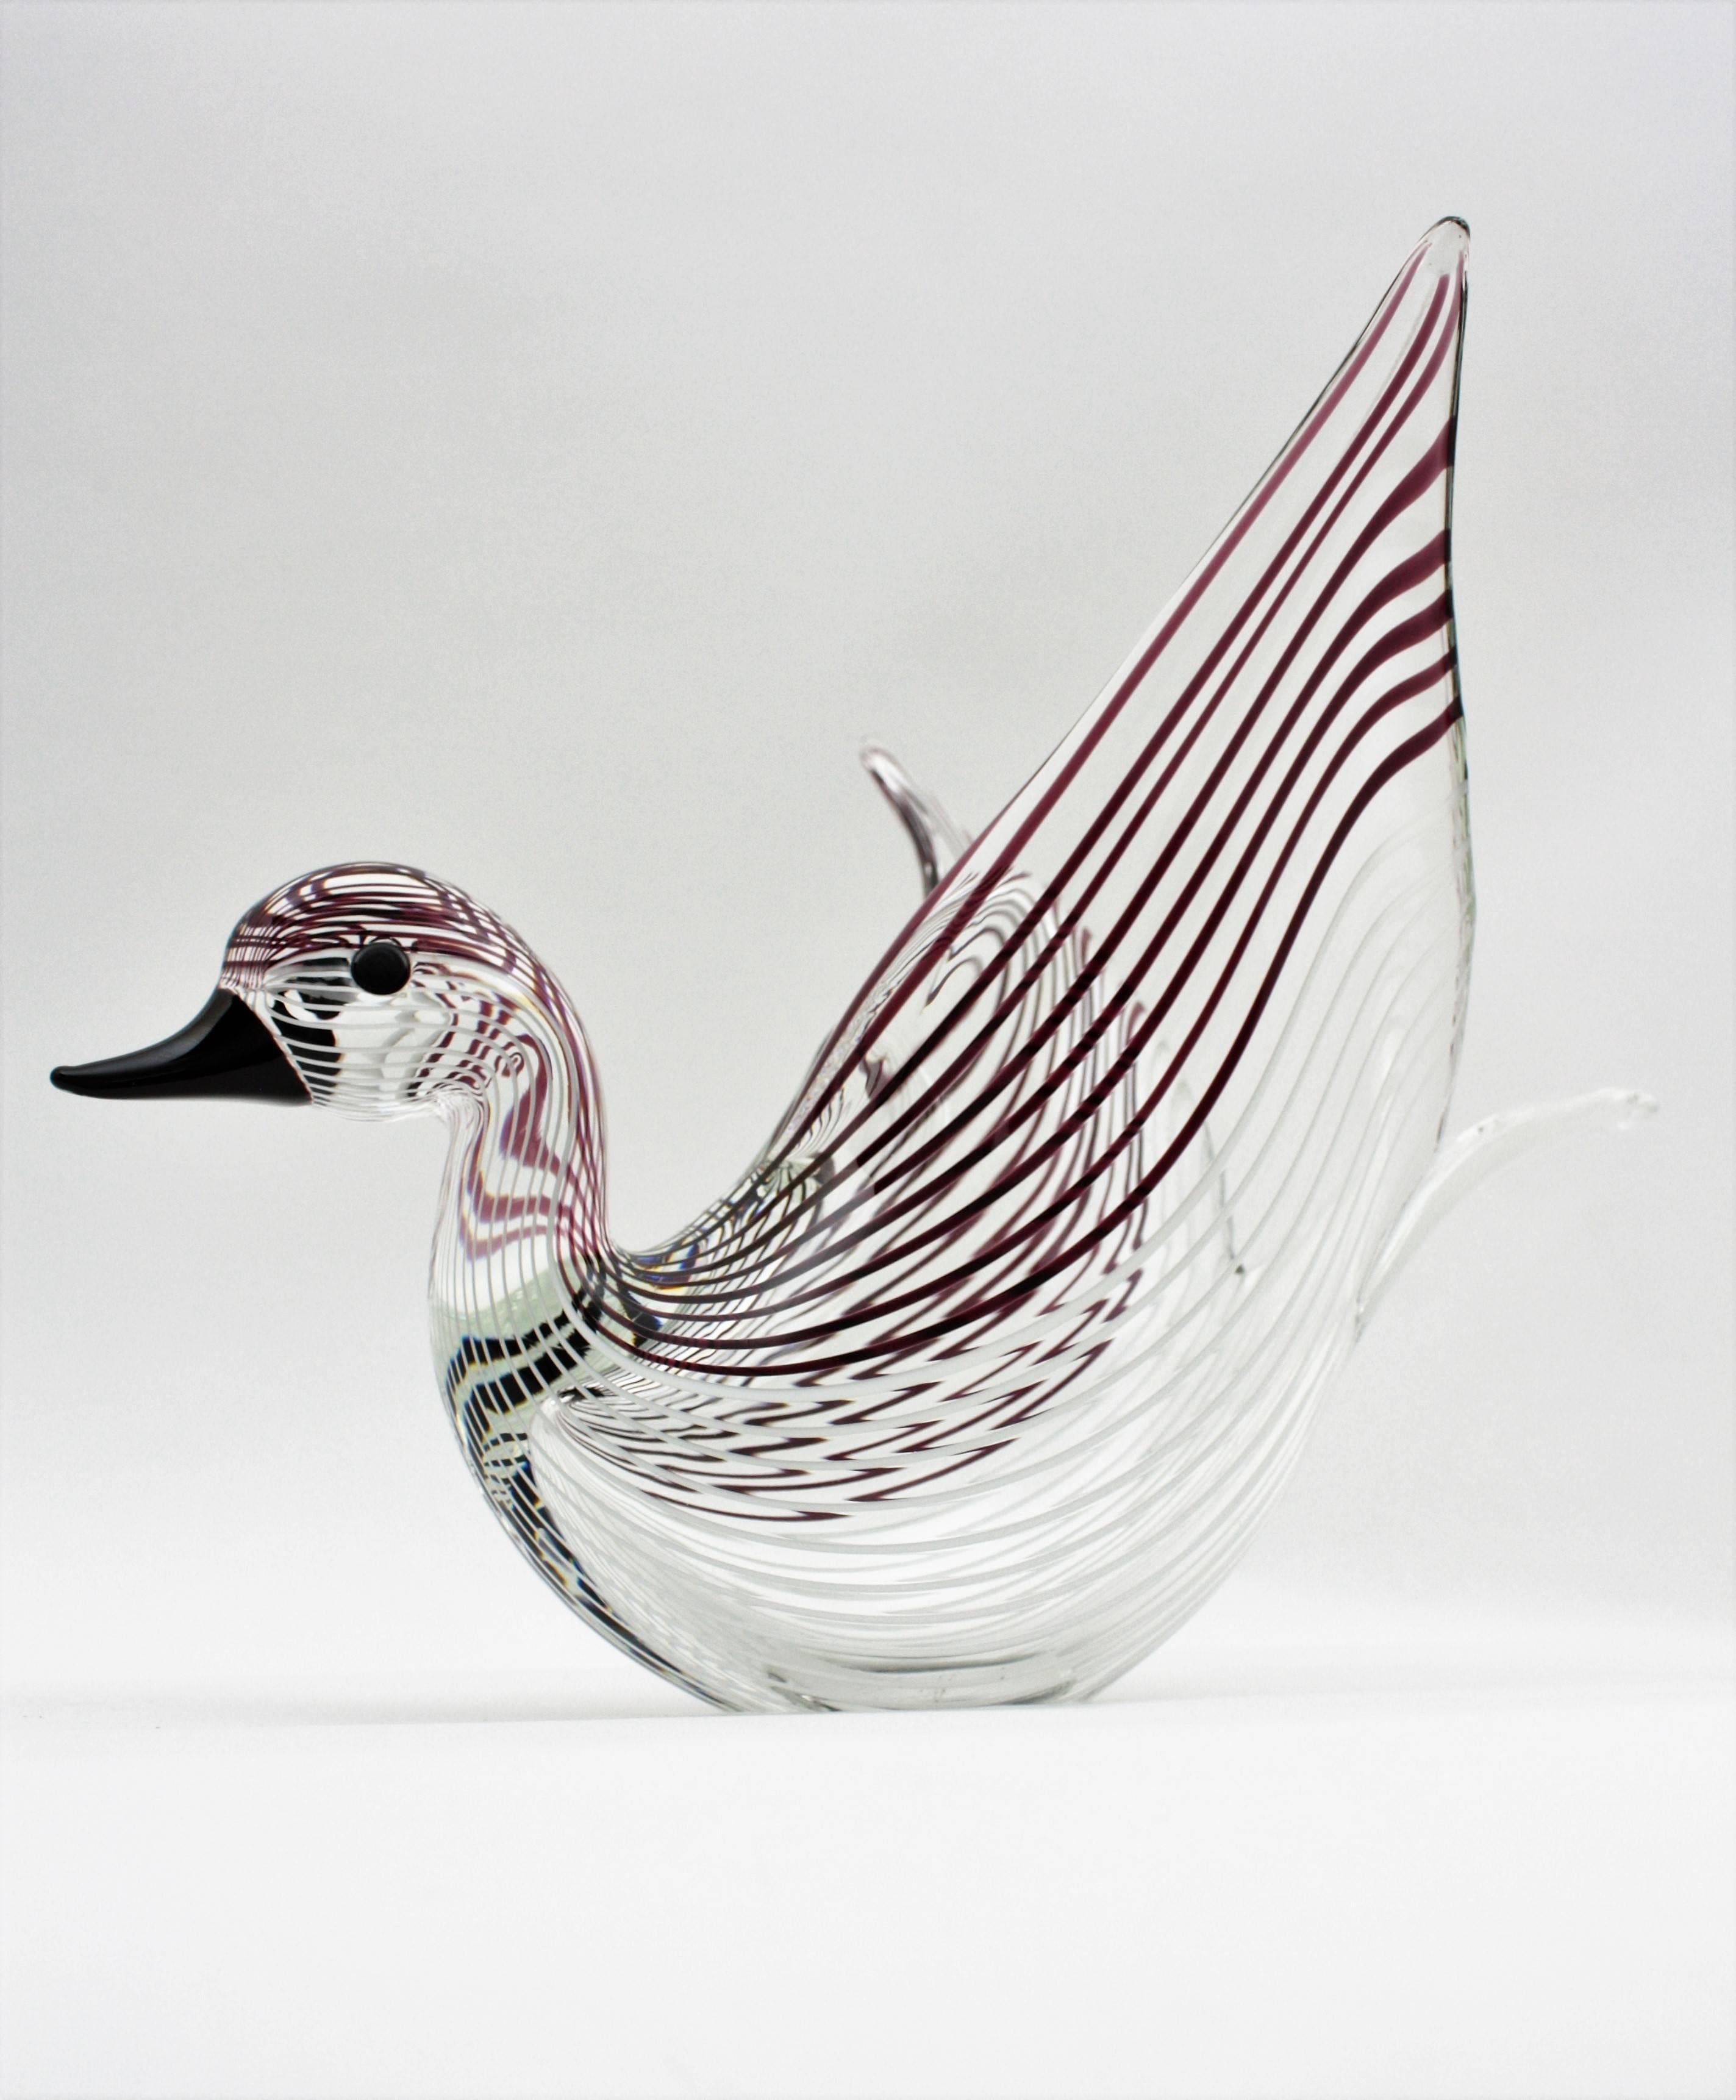 Large Licio Zanetti Striped Murano Glass Open Wings Duck Sculpture or Vase 1